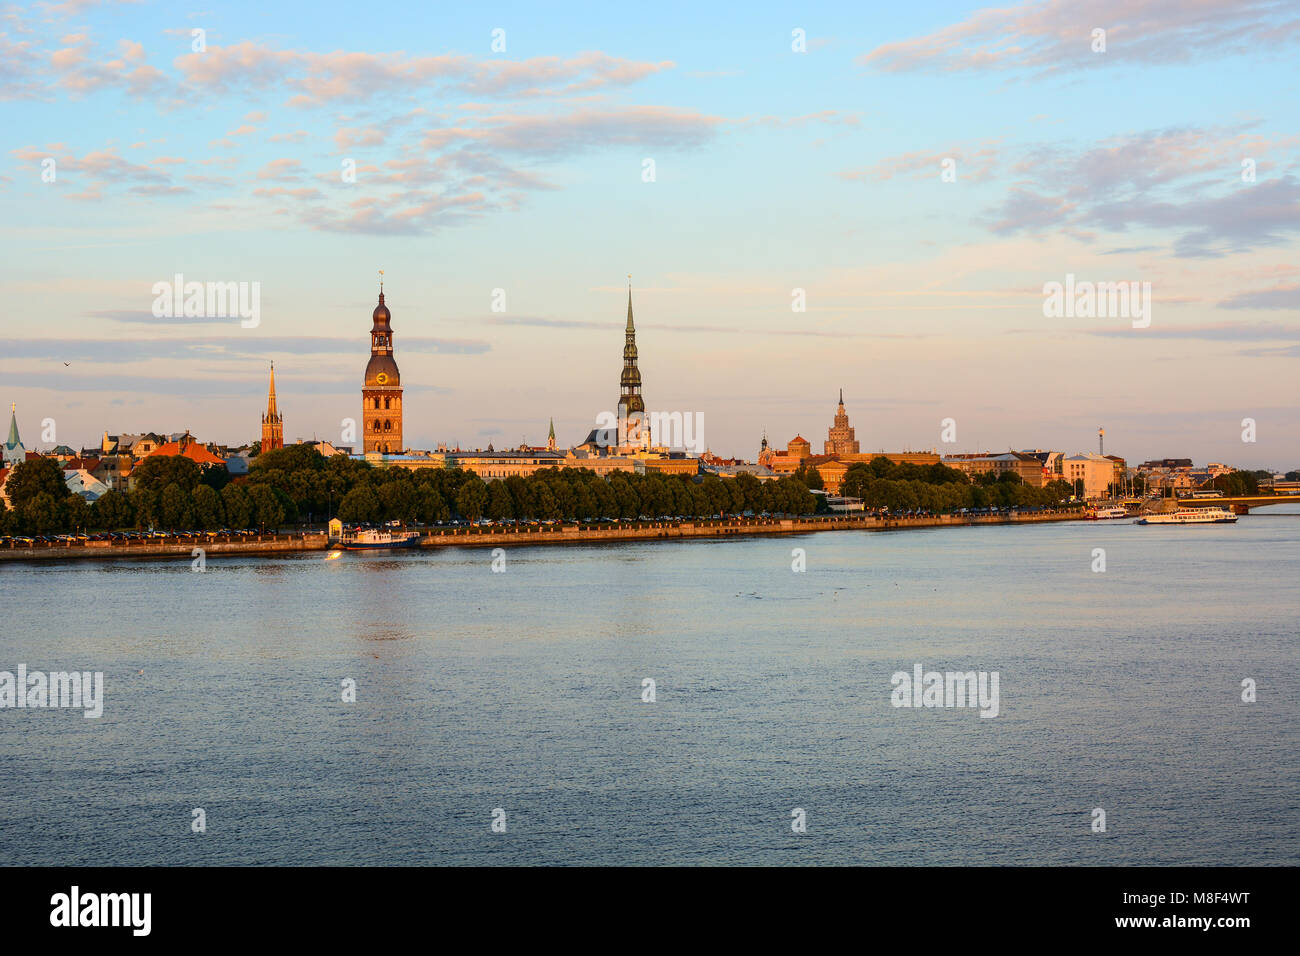 Das stadtbild der Altstadt von Riga und Daugava (westlichen Dwina) River, Lettland. Mittelalterliche Architektur, gotische Gebäude, Panoramaaussicht Stockfoto